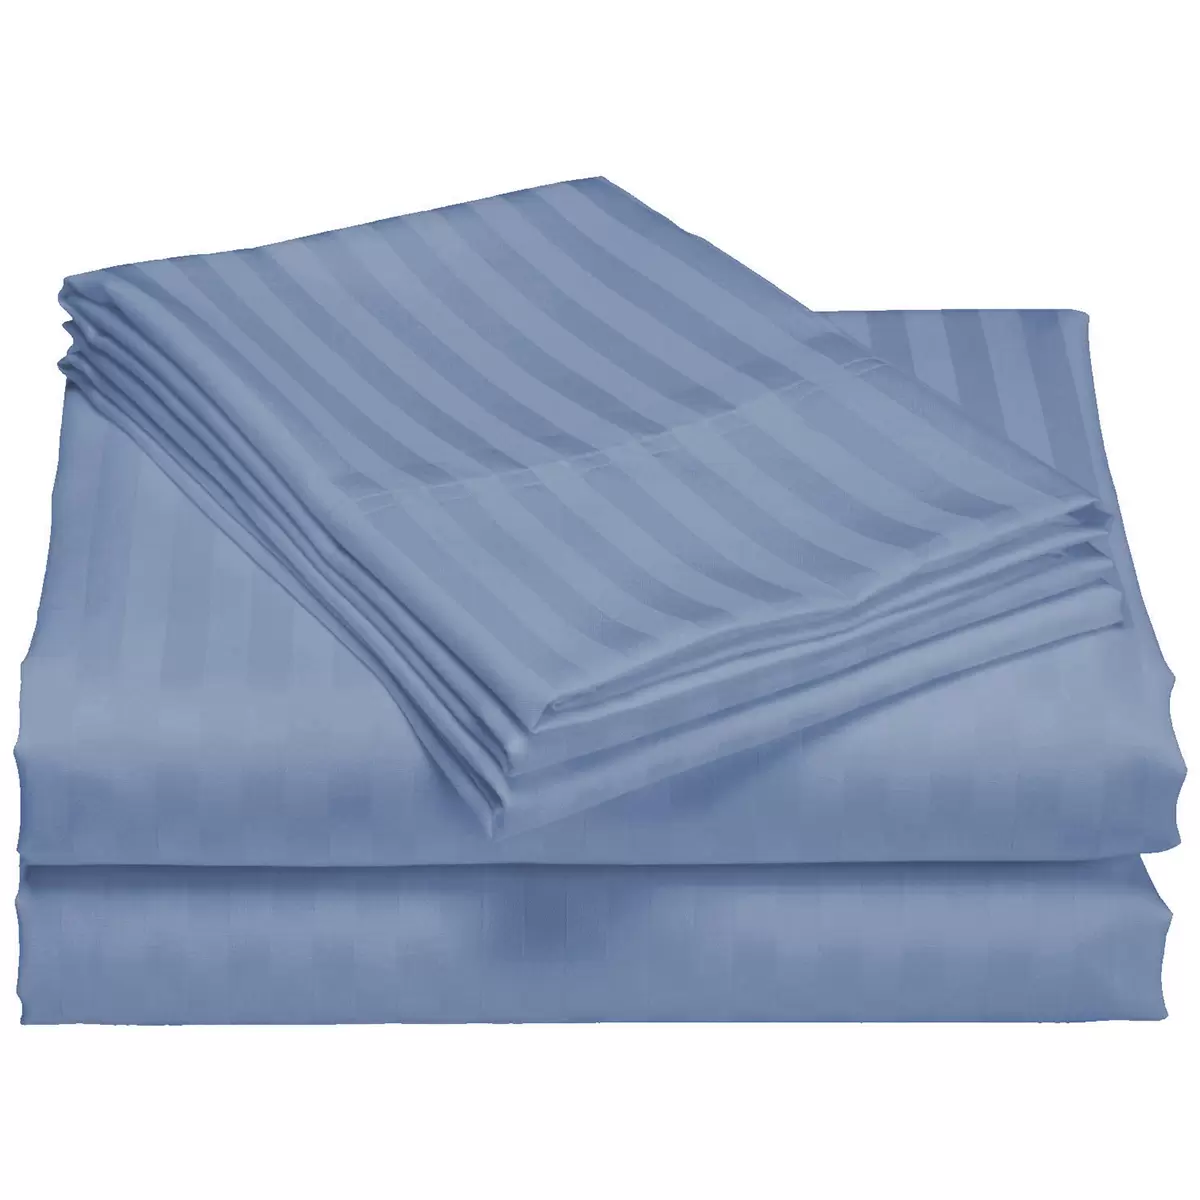 Royal Comfort 1200 Thread Count Damask Stripe Cotton Blend Quilt Cover King Set Blue Frog